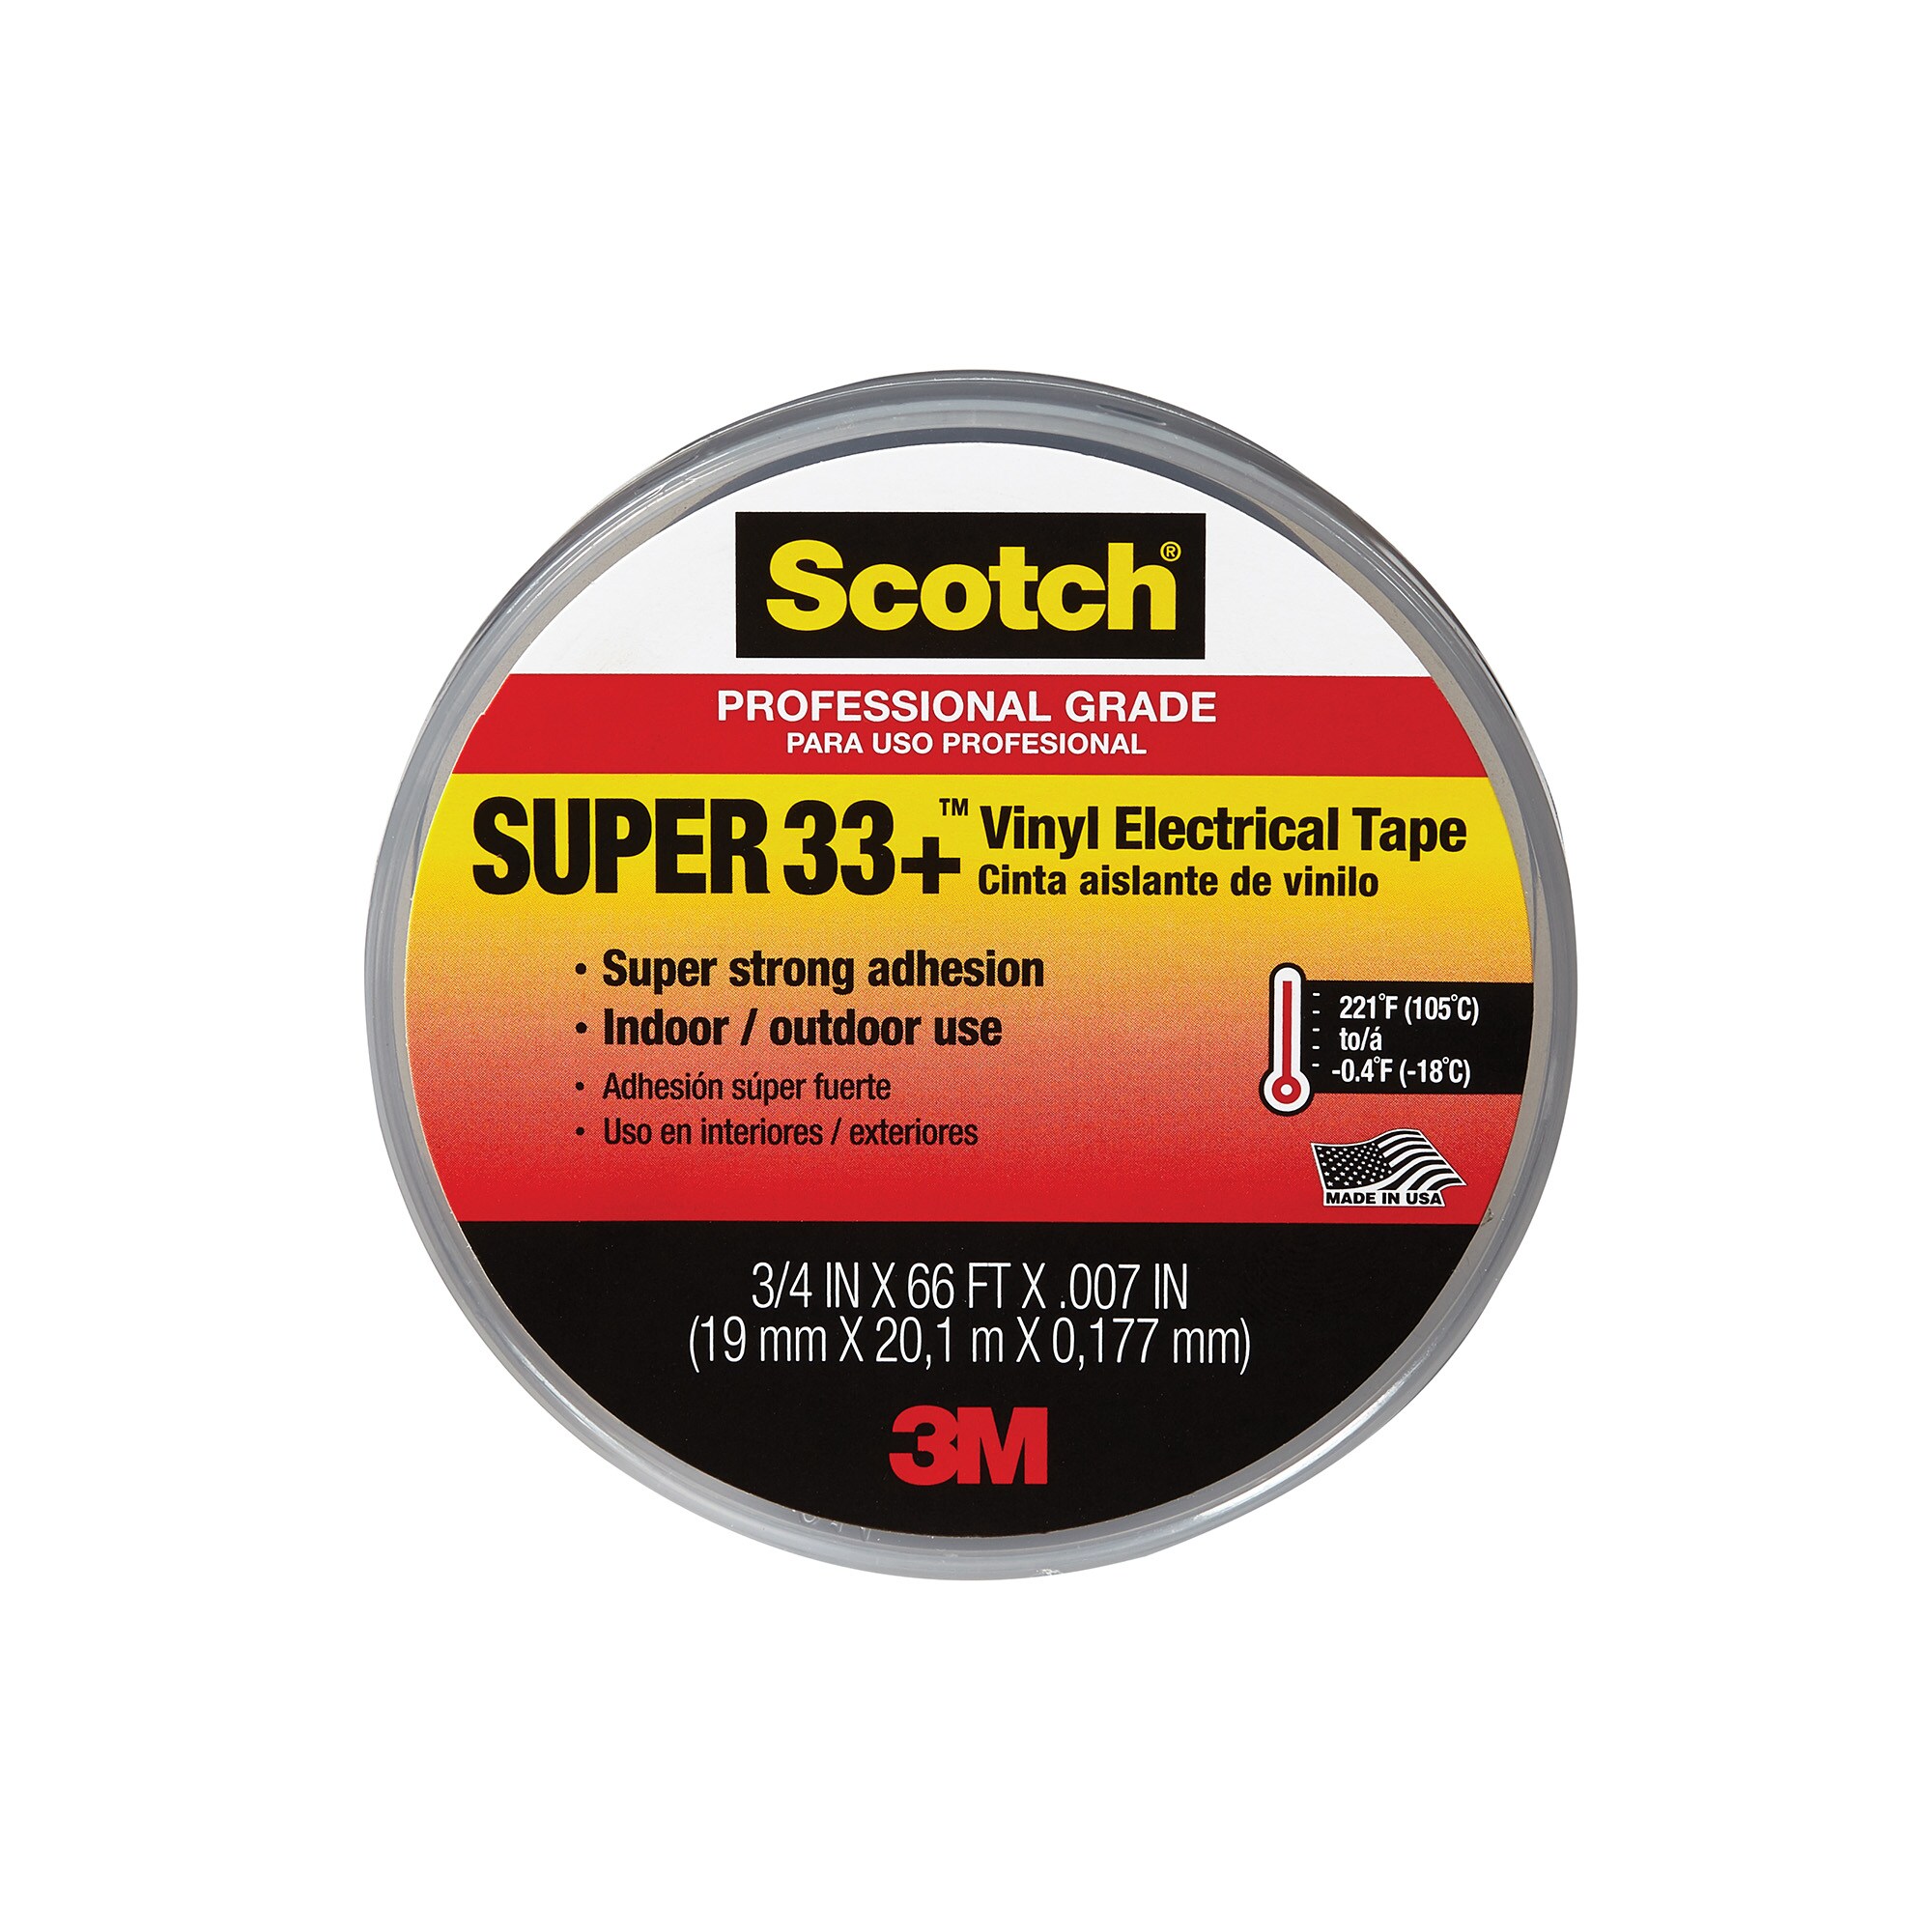 3/4 in x 66 ft Vinyl Electrical Tape 12pk Scotch Super 33 